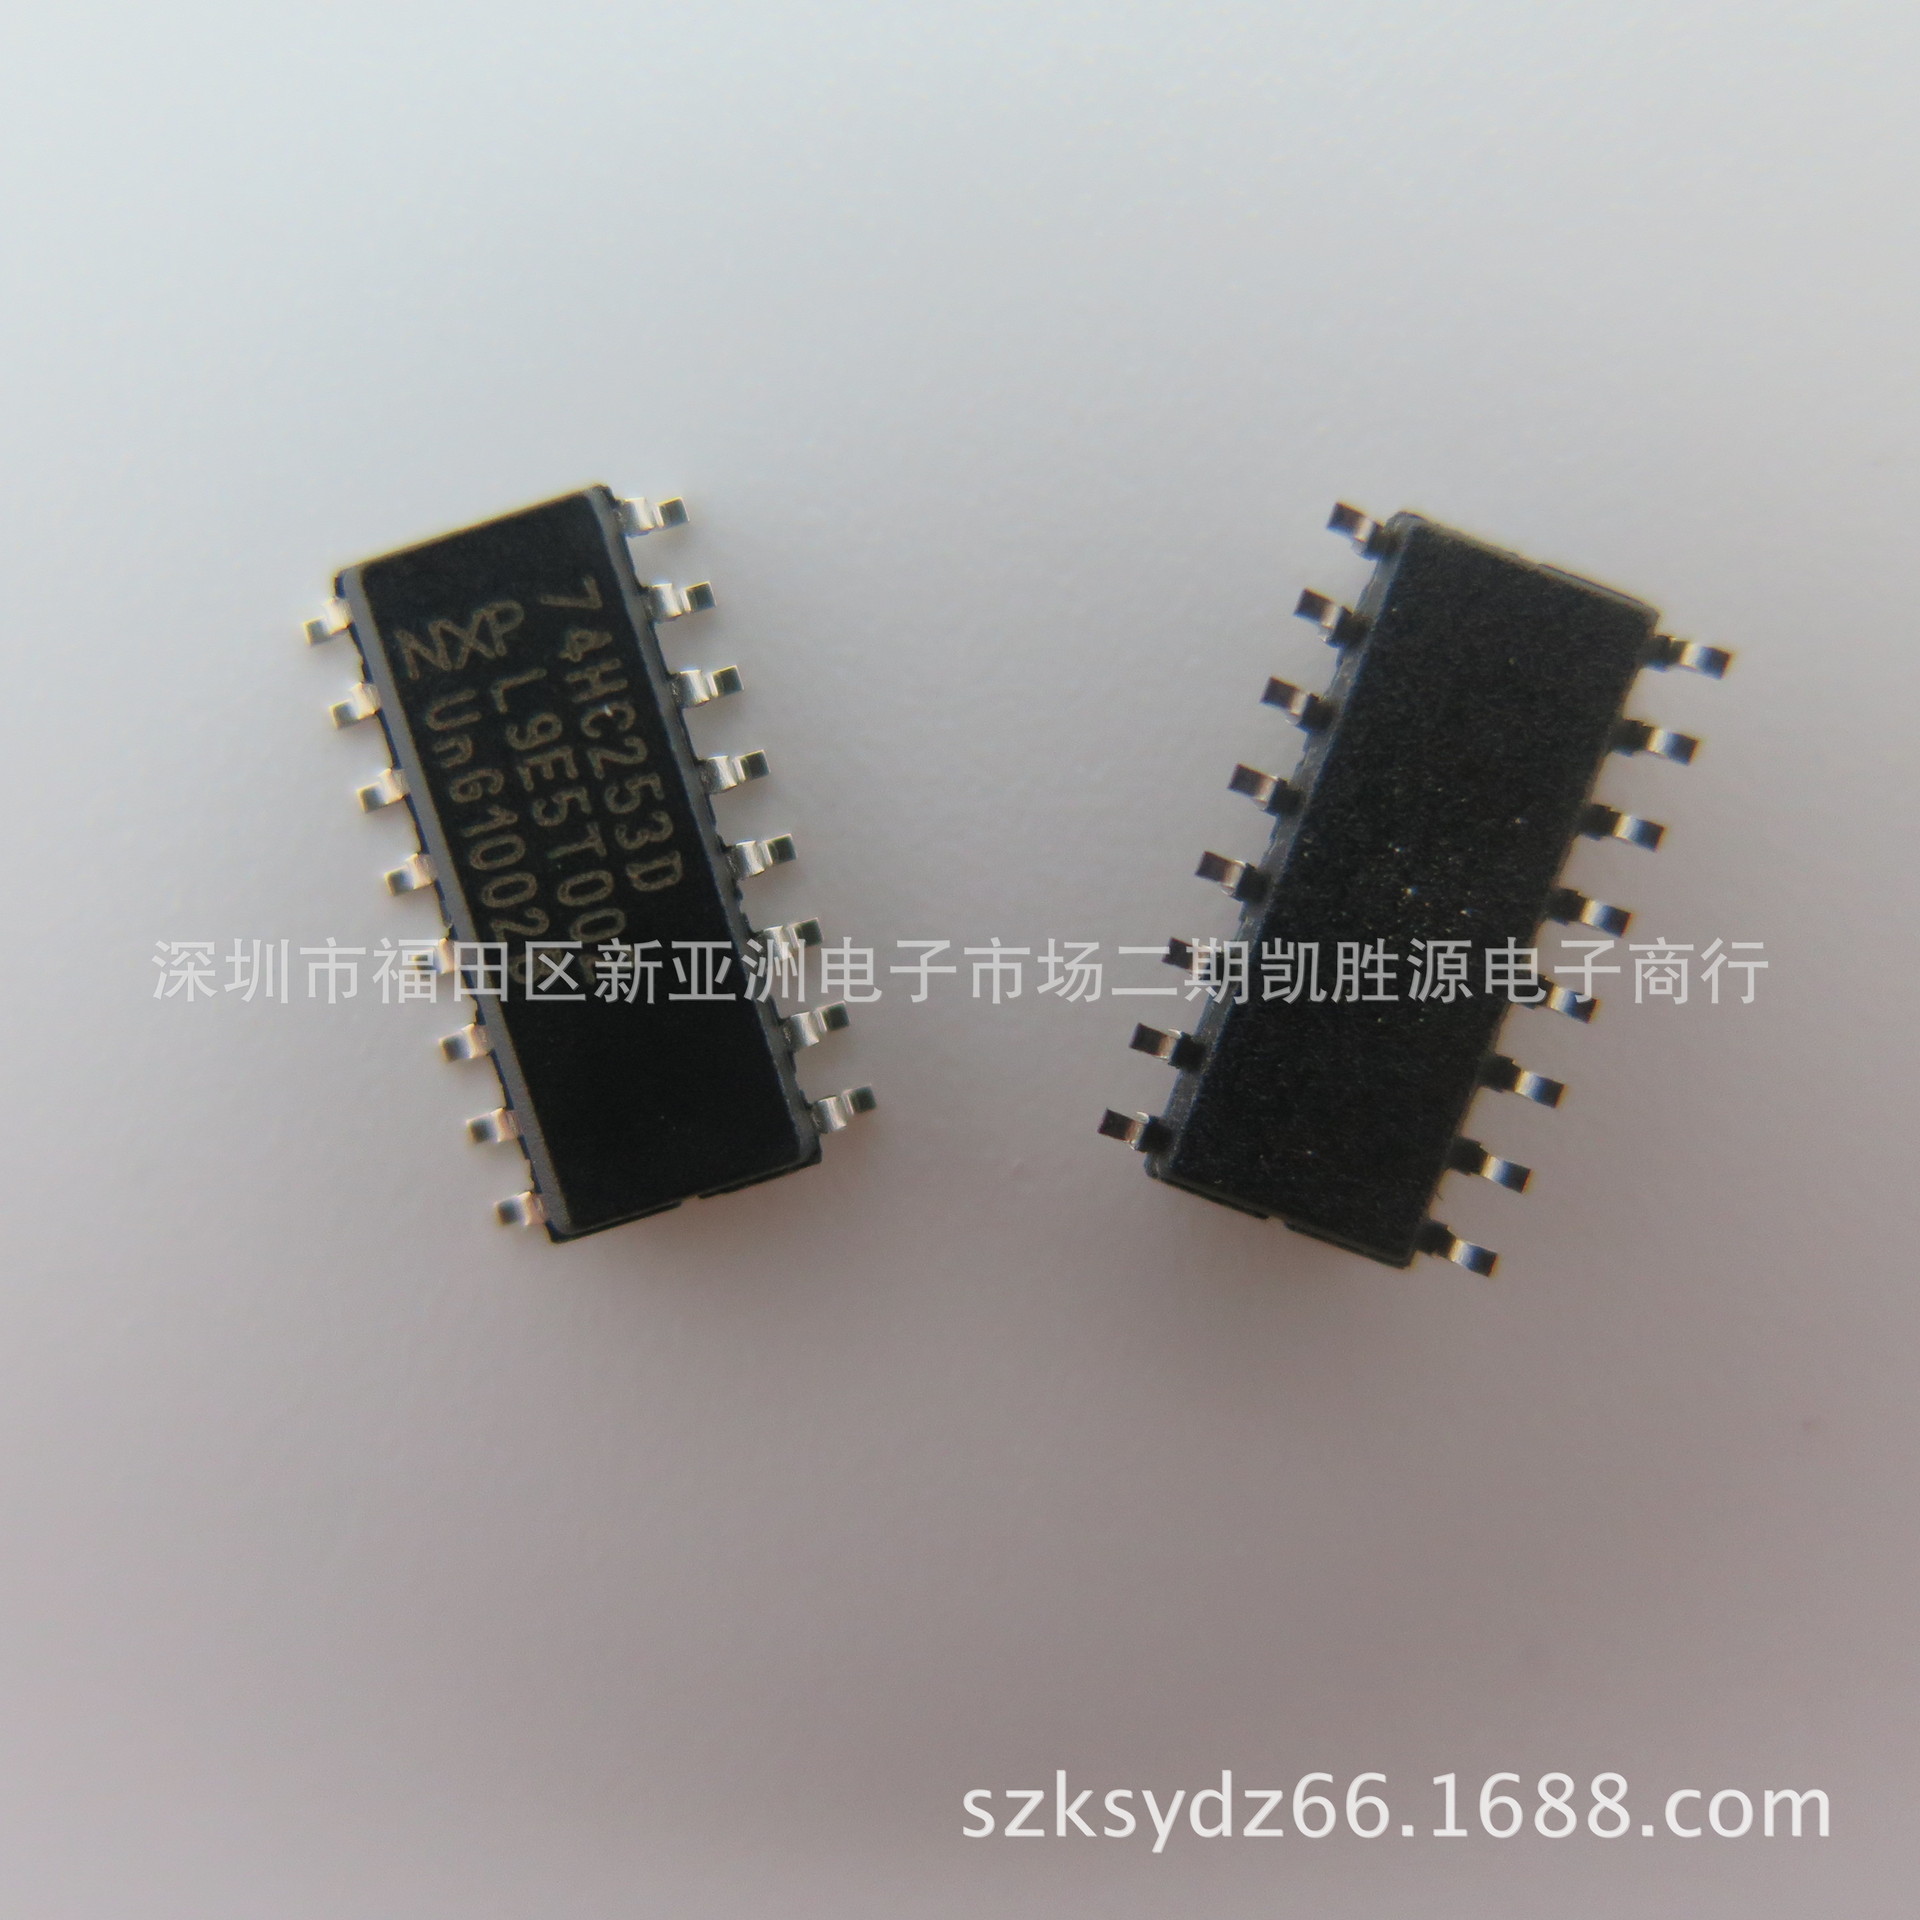  编码器解码器复用器IC芯片74HC253D进口原装集成电路贴片SOP-16